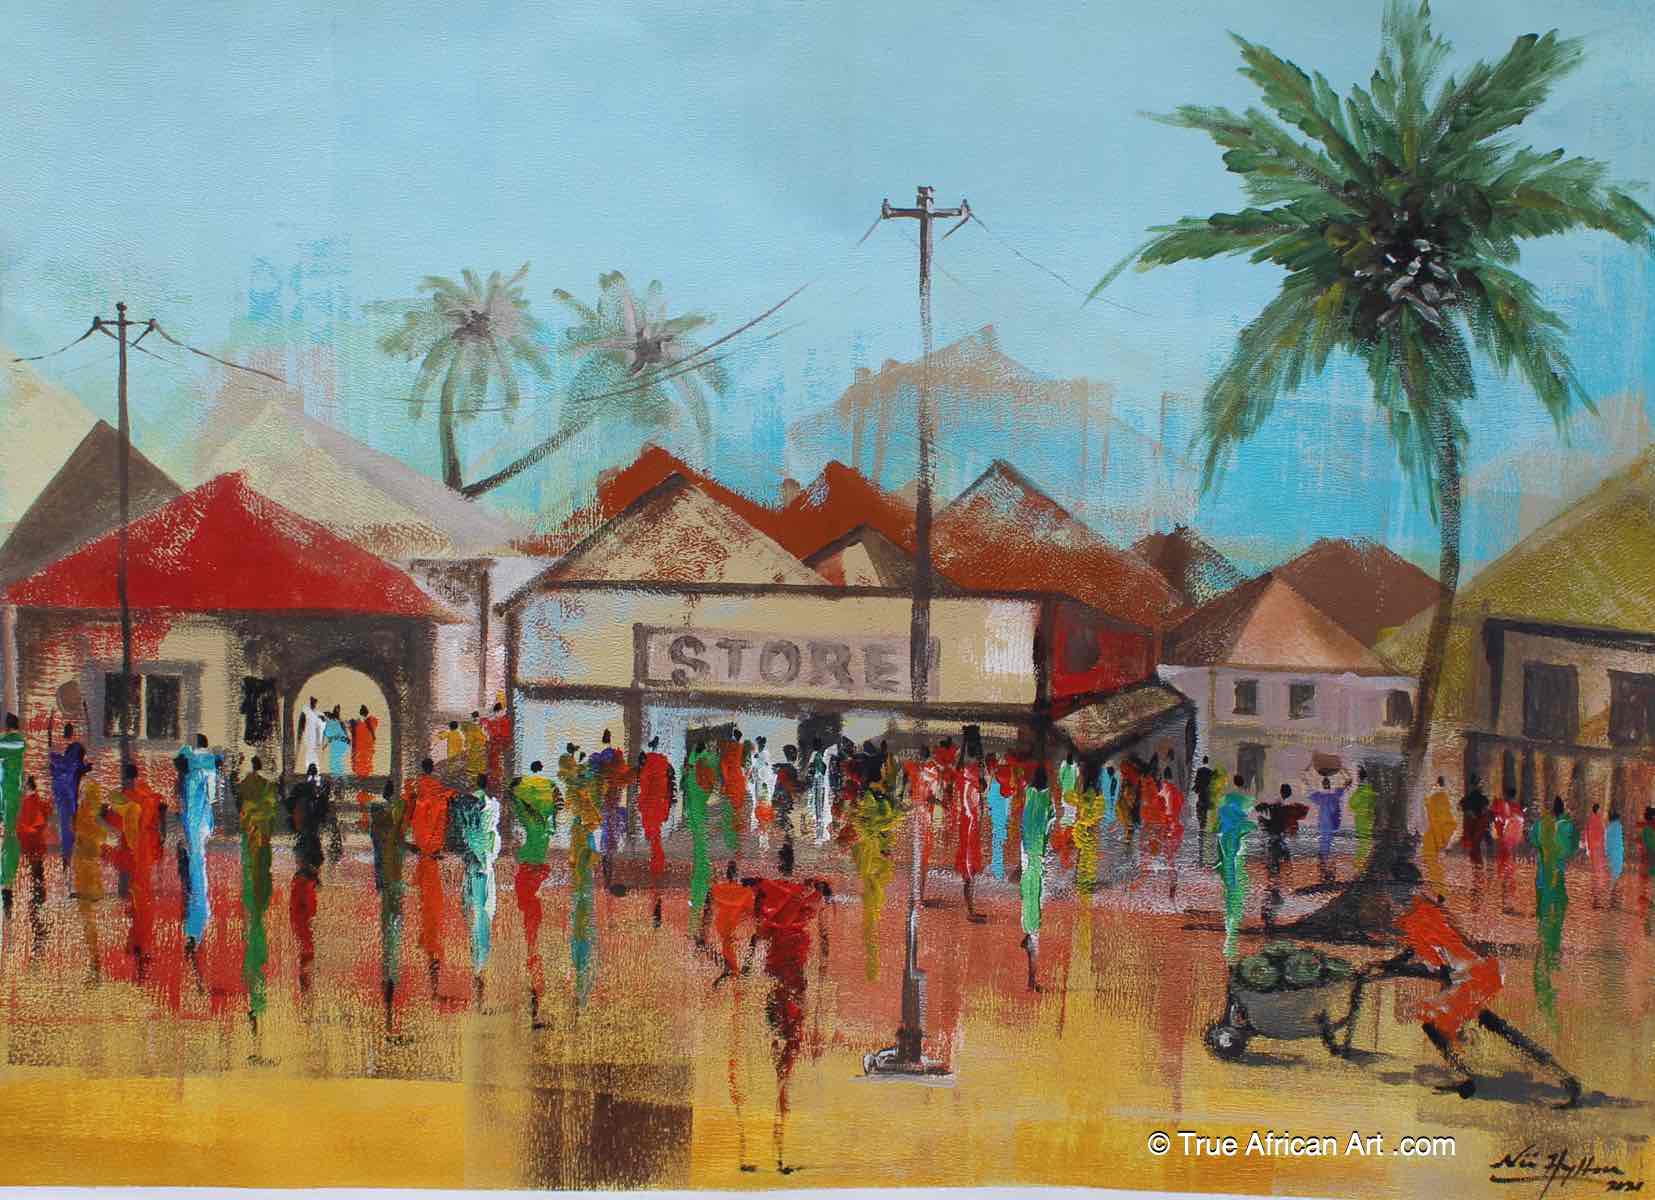 Nii Hylton  |  Ghana  |  "Community Rescue"  |  Original  |  True African Art .com